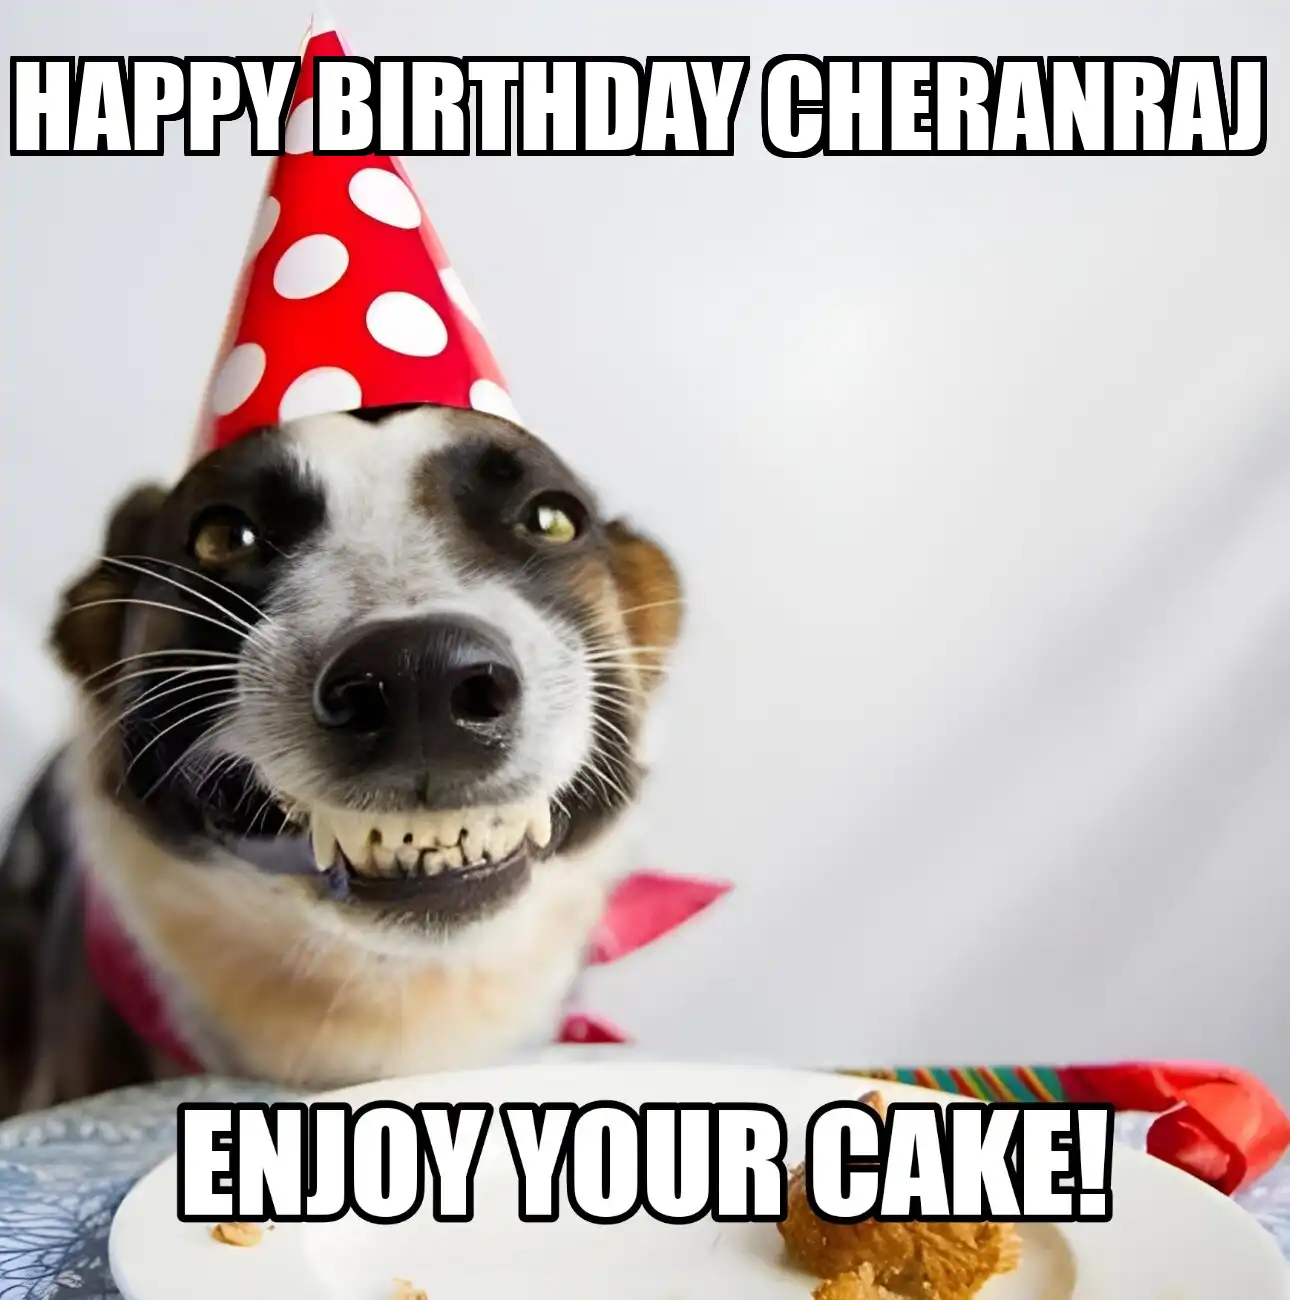 Happy Birthday Cheranraj Enjoy Your Cake Dog Meme